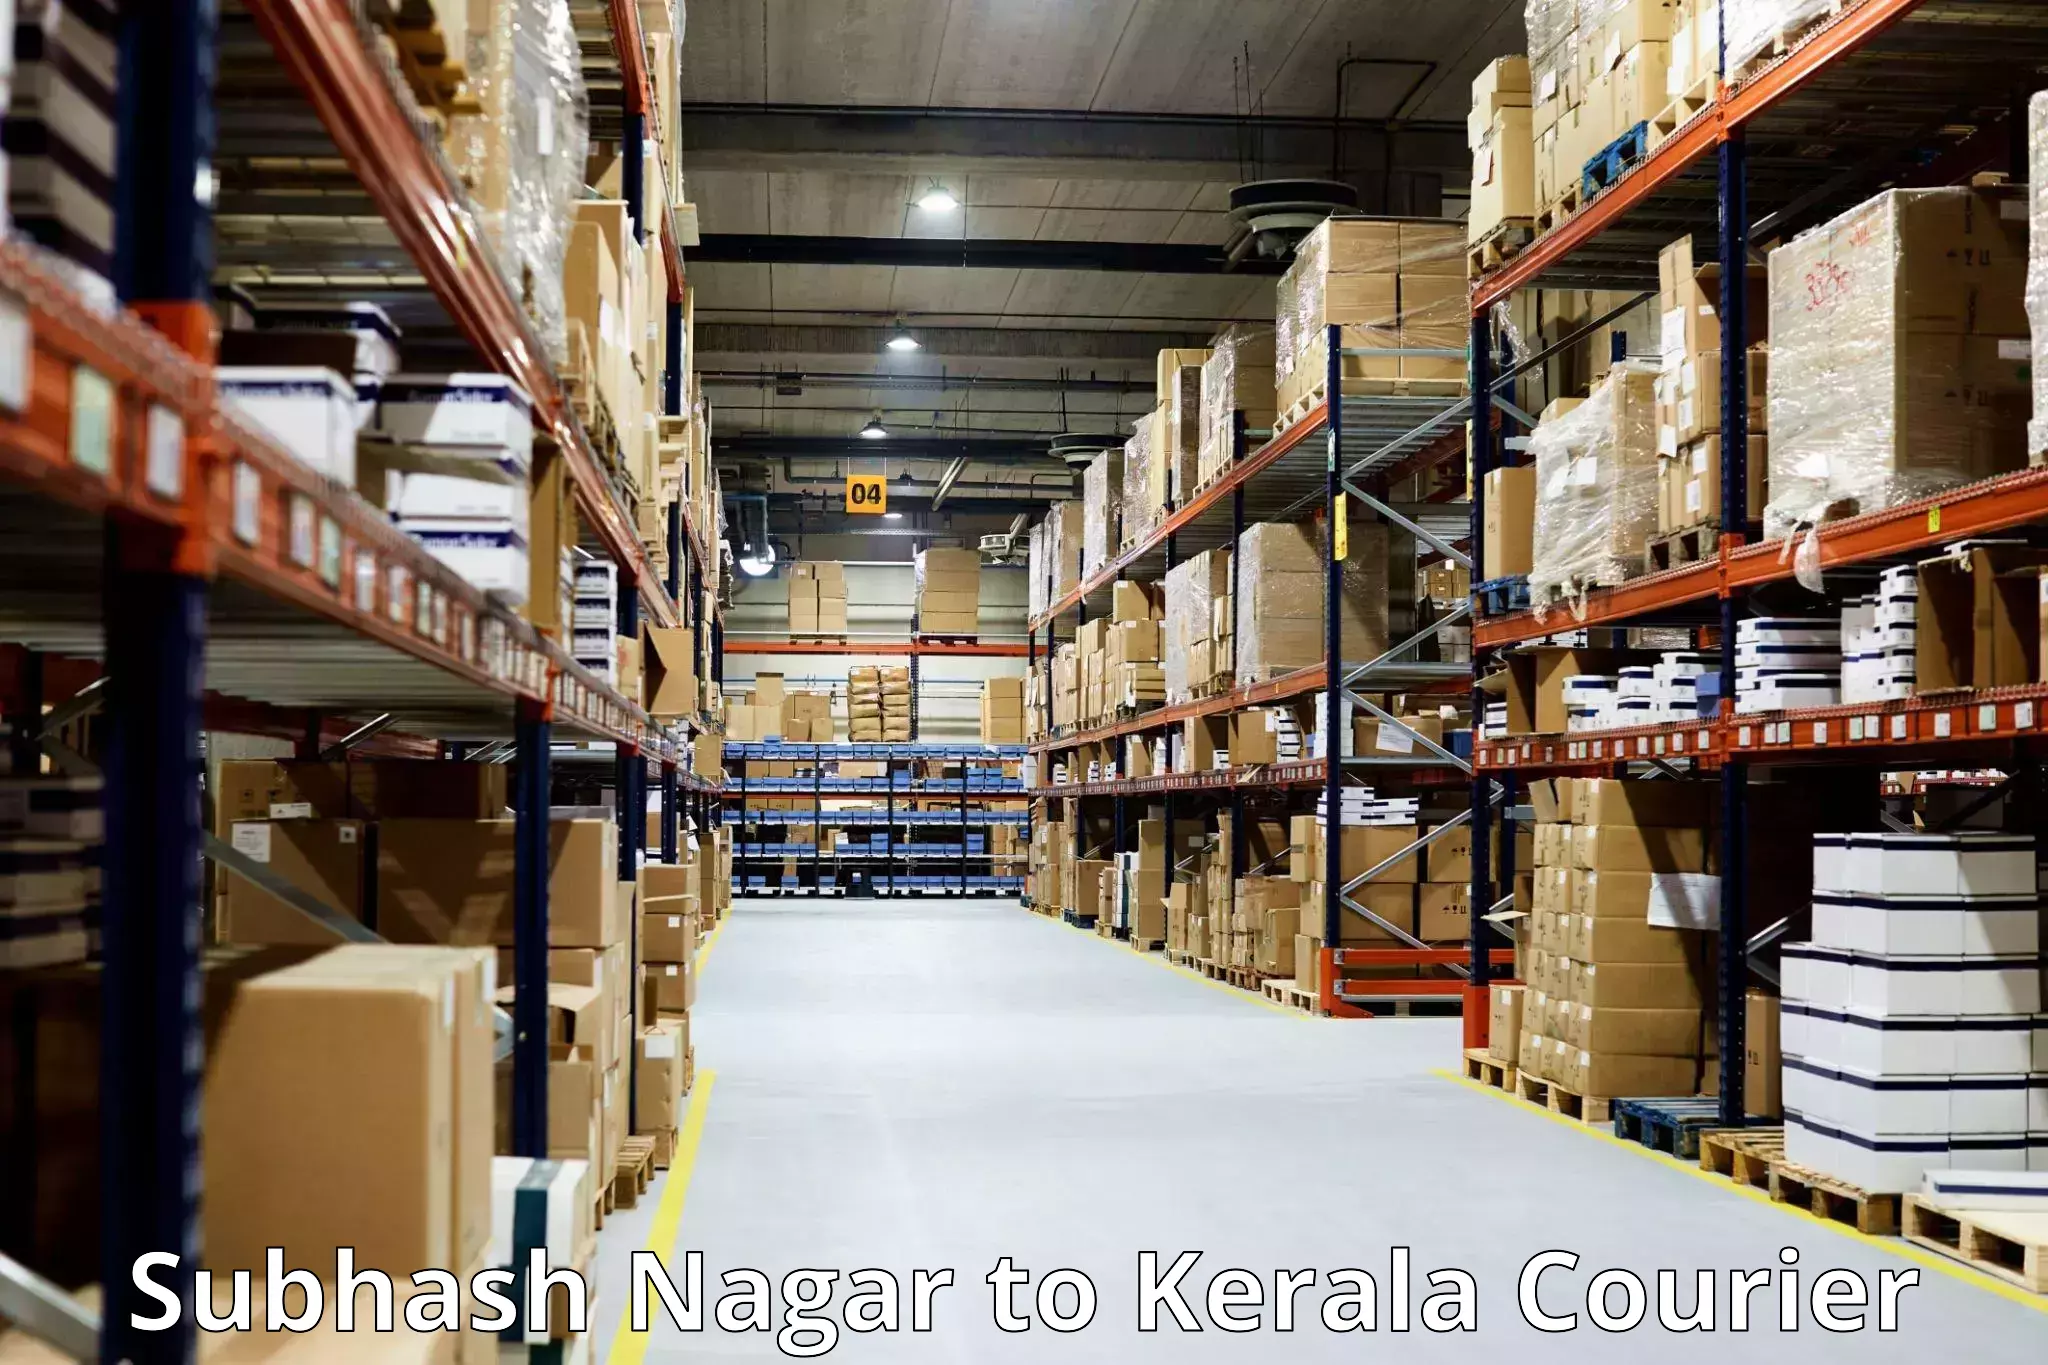 Personal effects shipping in Subhash Nagar to Kerala